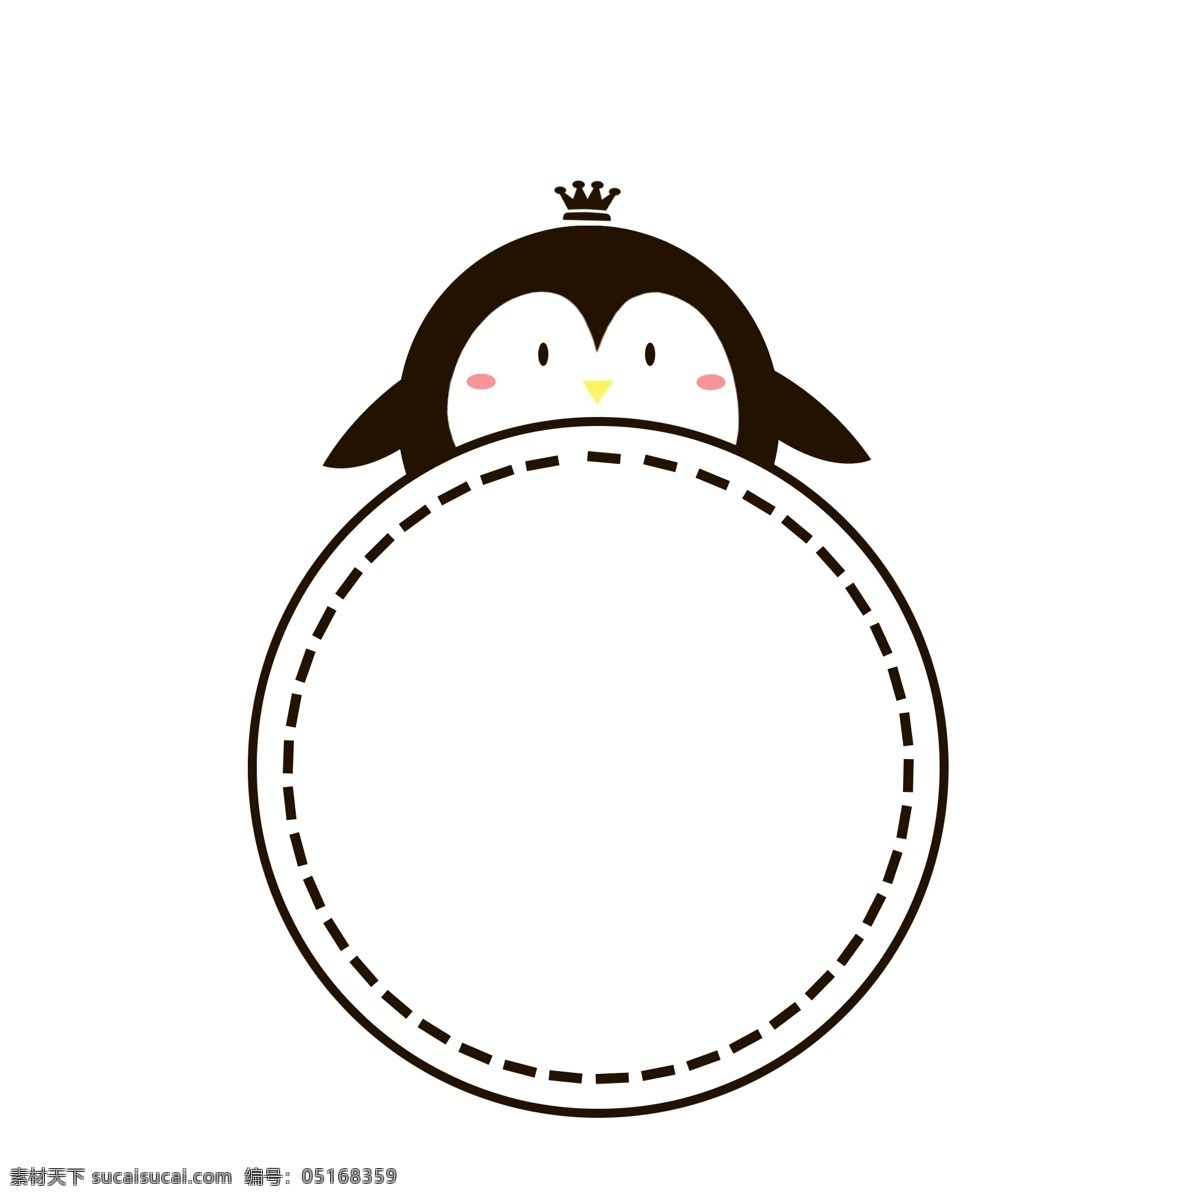 卡通 可爱 企鹅 动物 边框 简笔画 皇冠 黑白 小企鹅 虚线 圆形